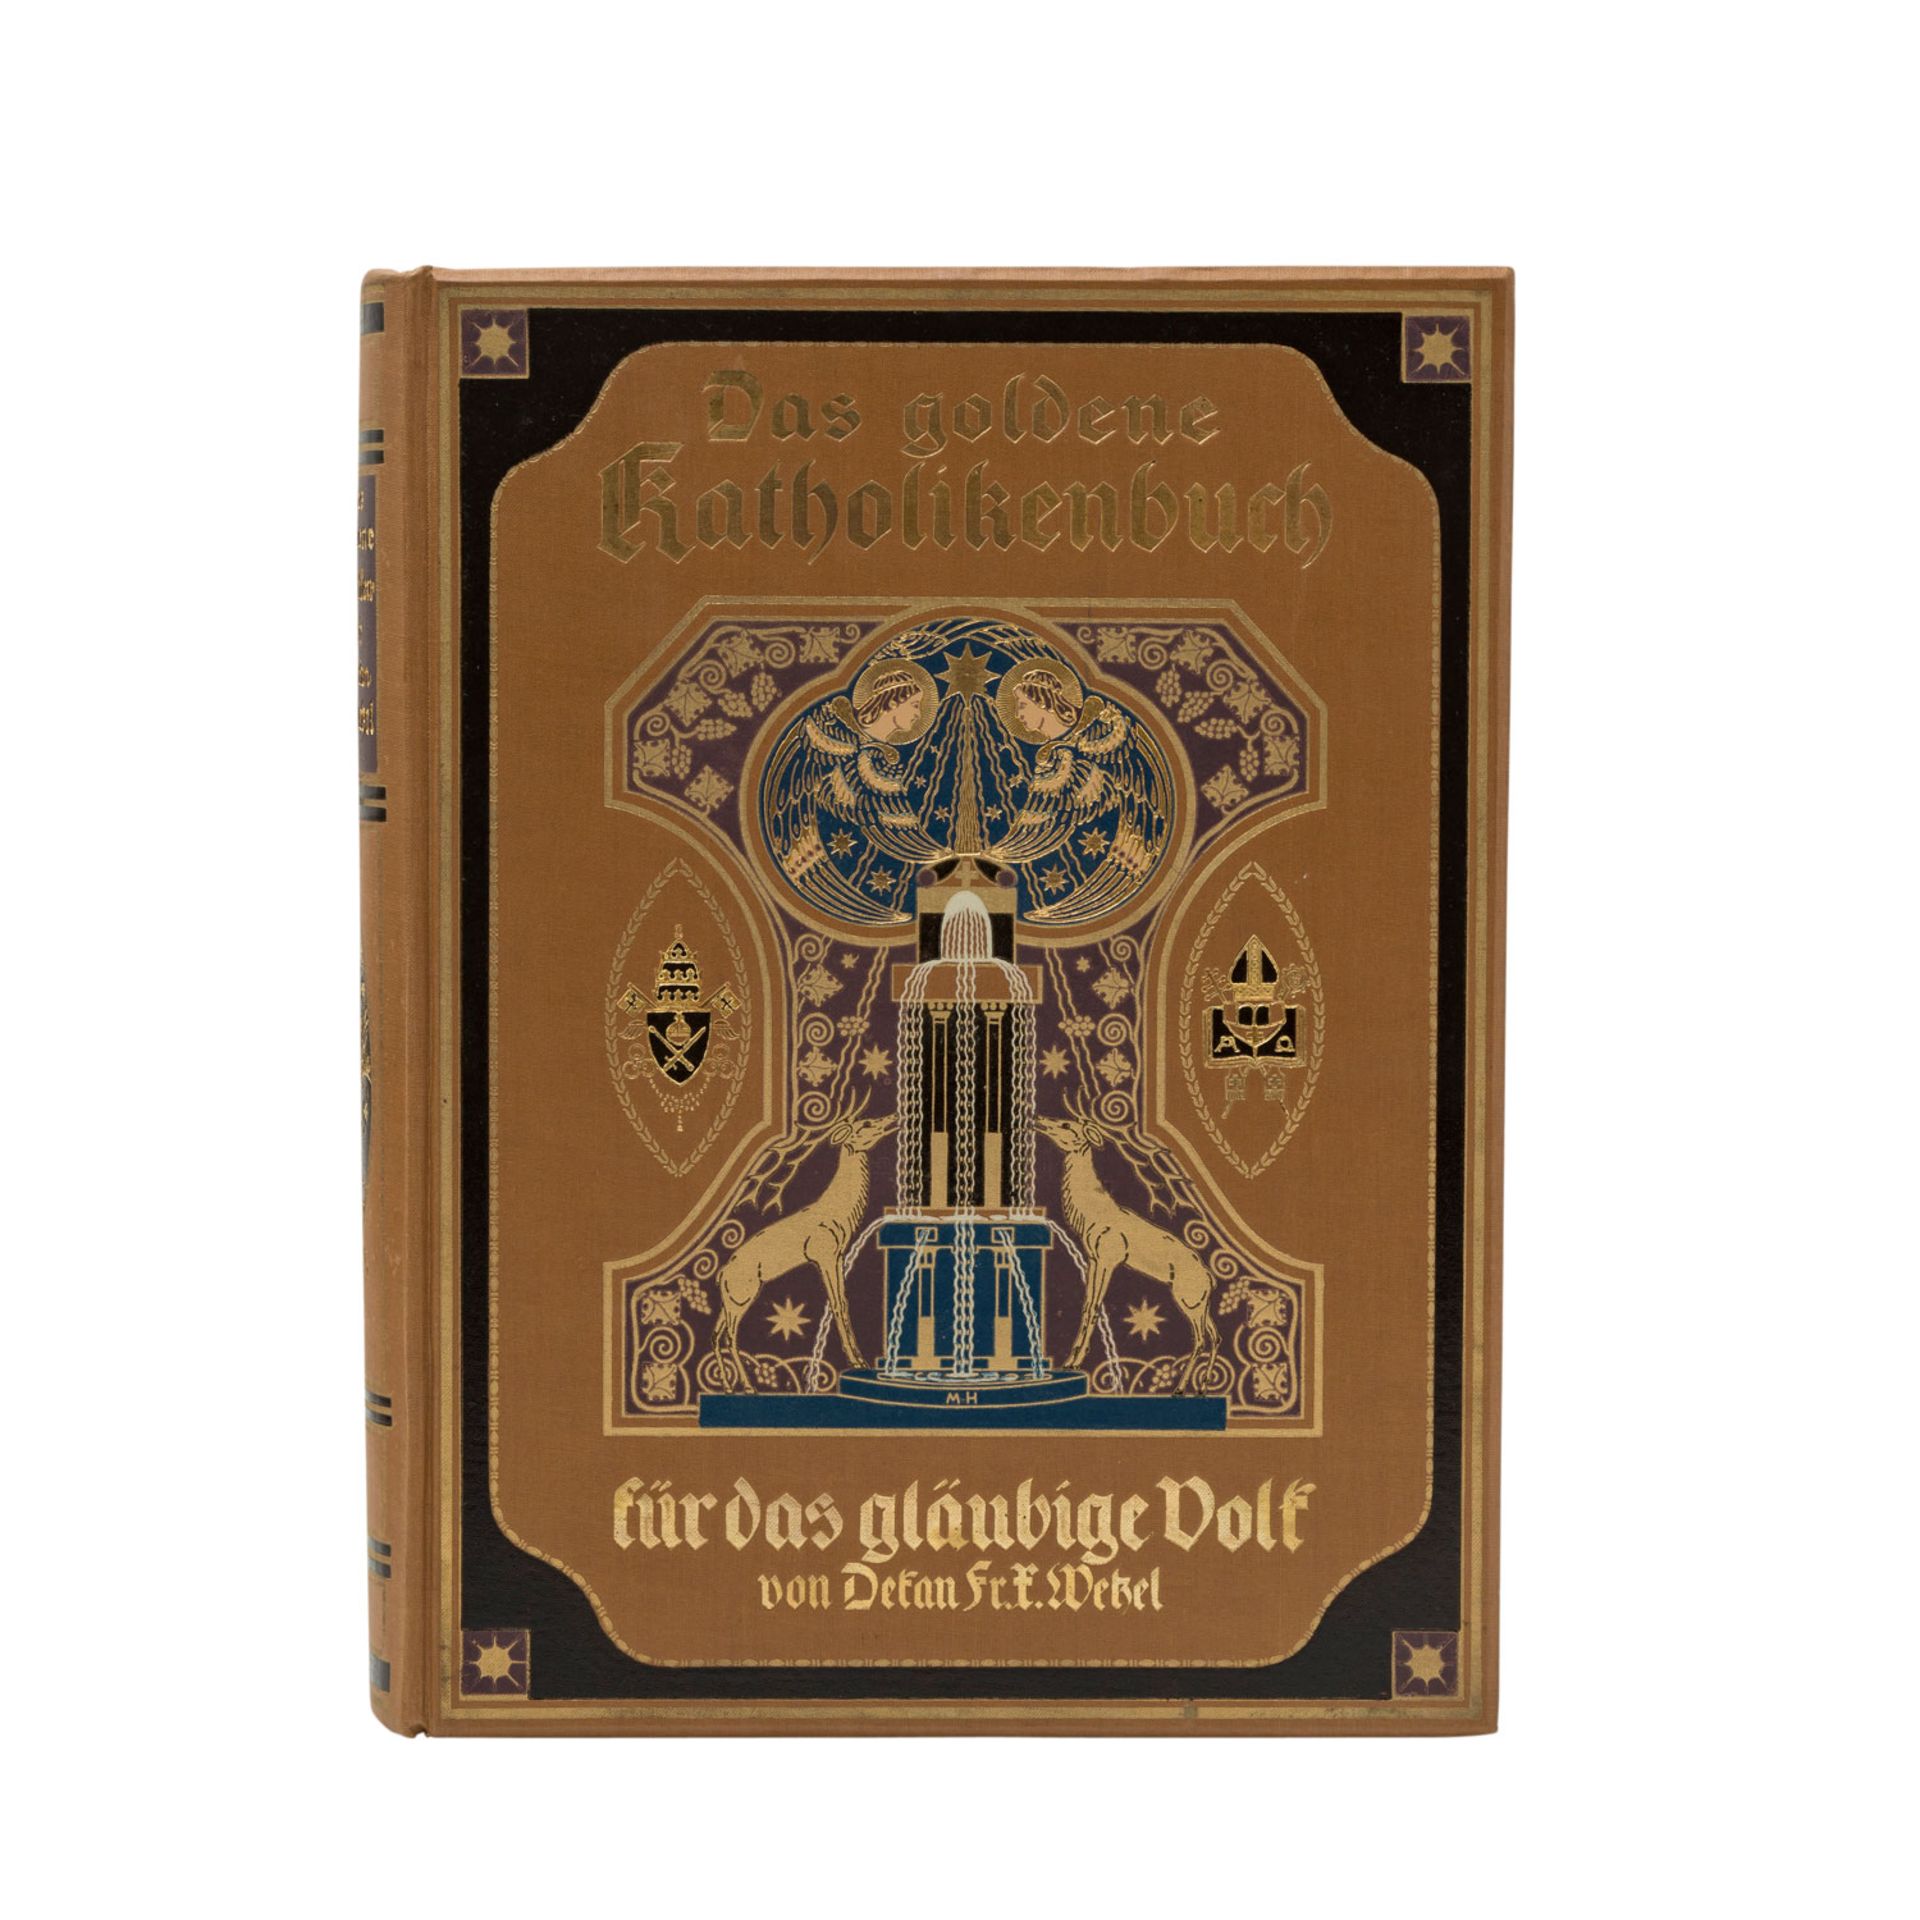 DAS GOLDENE KATHOLIKENBUCHFÜR DAS GLÄUBIGE VOLK von Dekan Fr. X. Wetzel. Wiesbaden 1914. Mit